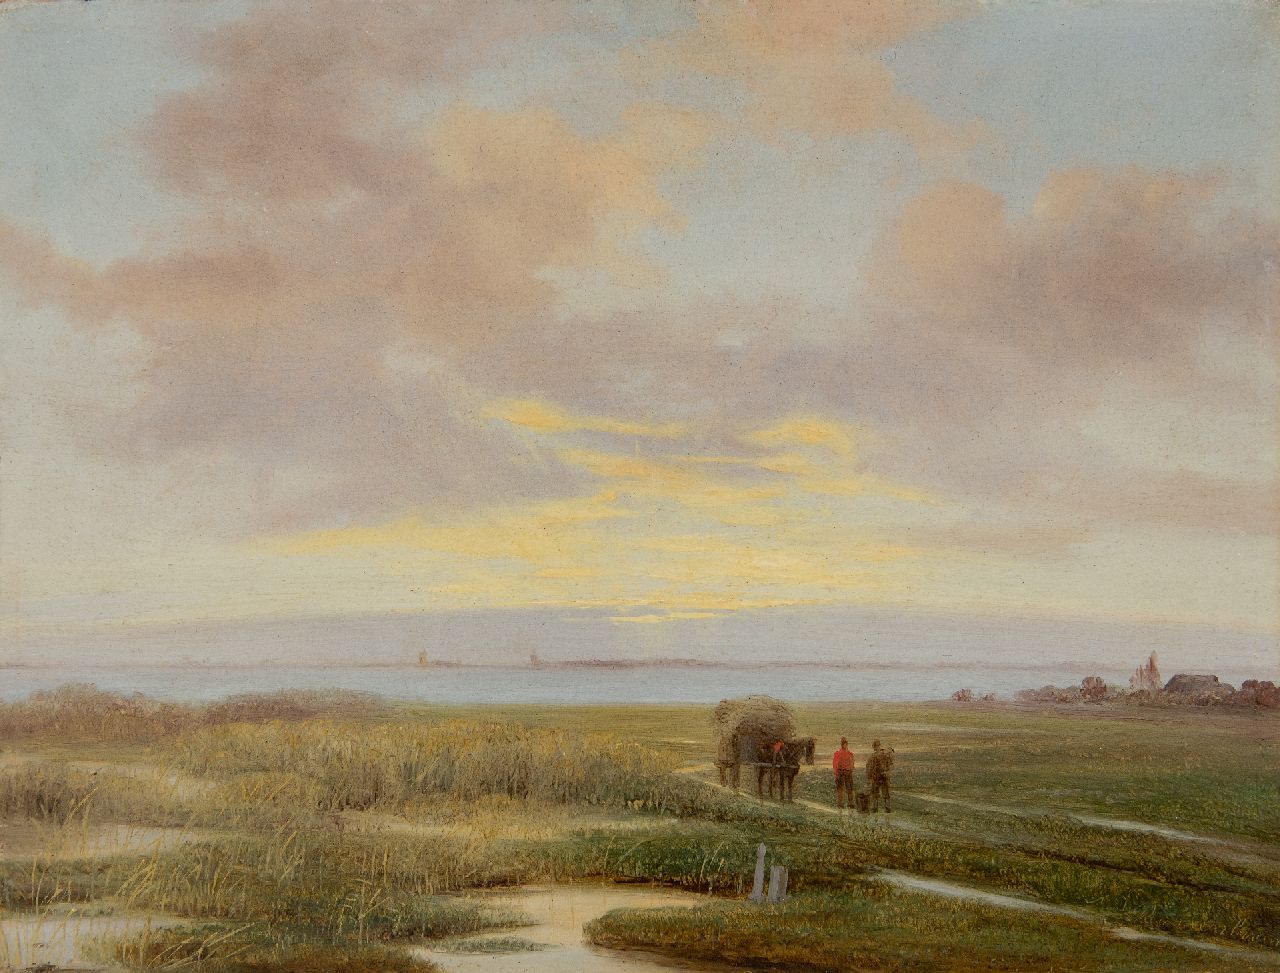 Roosenboom N.J.  | Nicolaas Johannes Roosenboom | Schilderijen te koop aangeboden | Landvolk met hooikar in weids landschap, olieverf op paneel 20,5 x 27,0 cm, gesigneerd rechtsonder